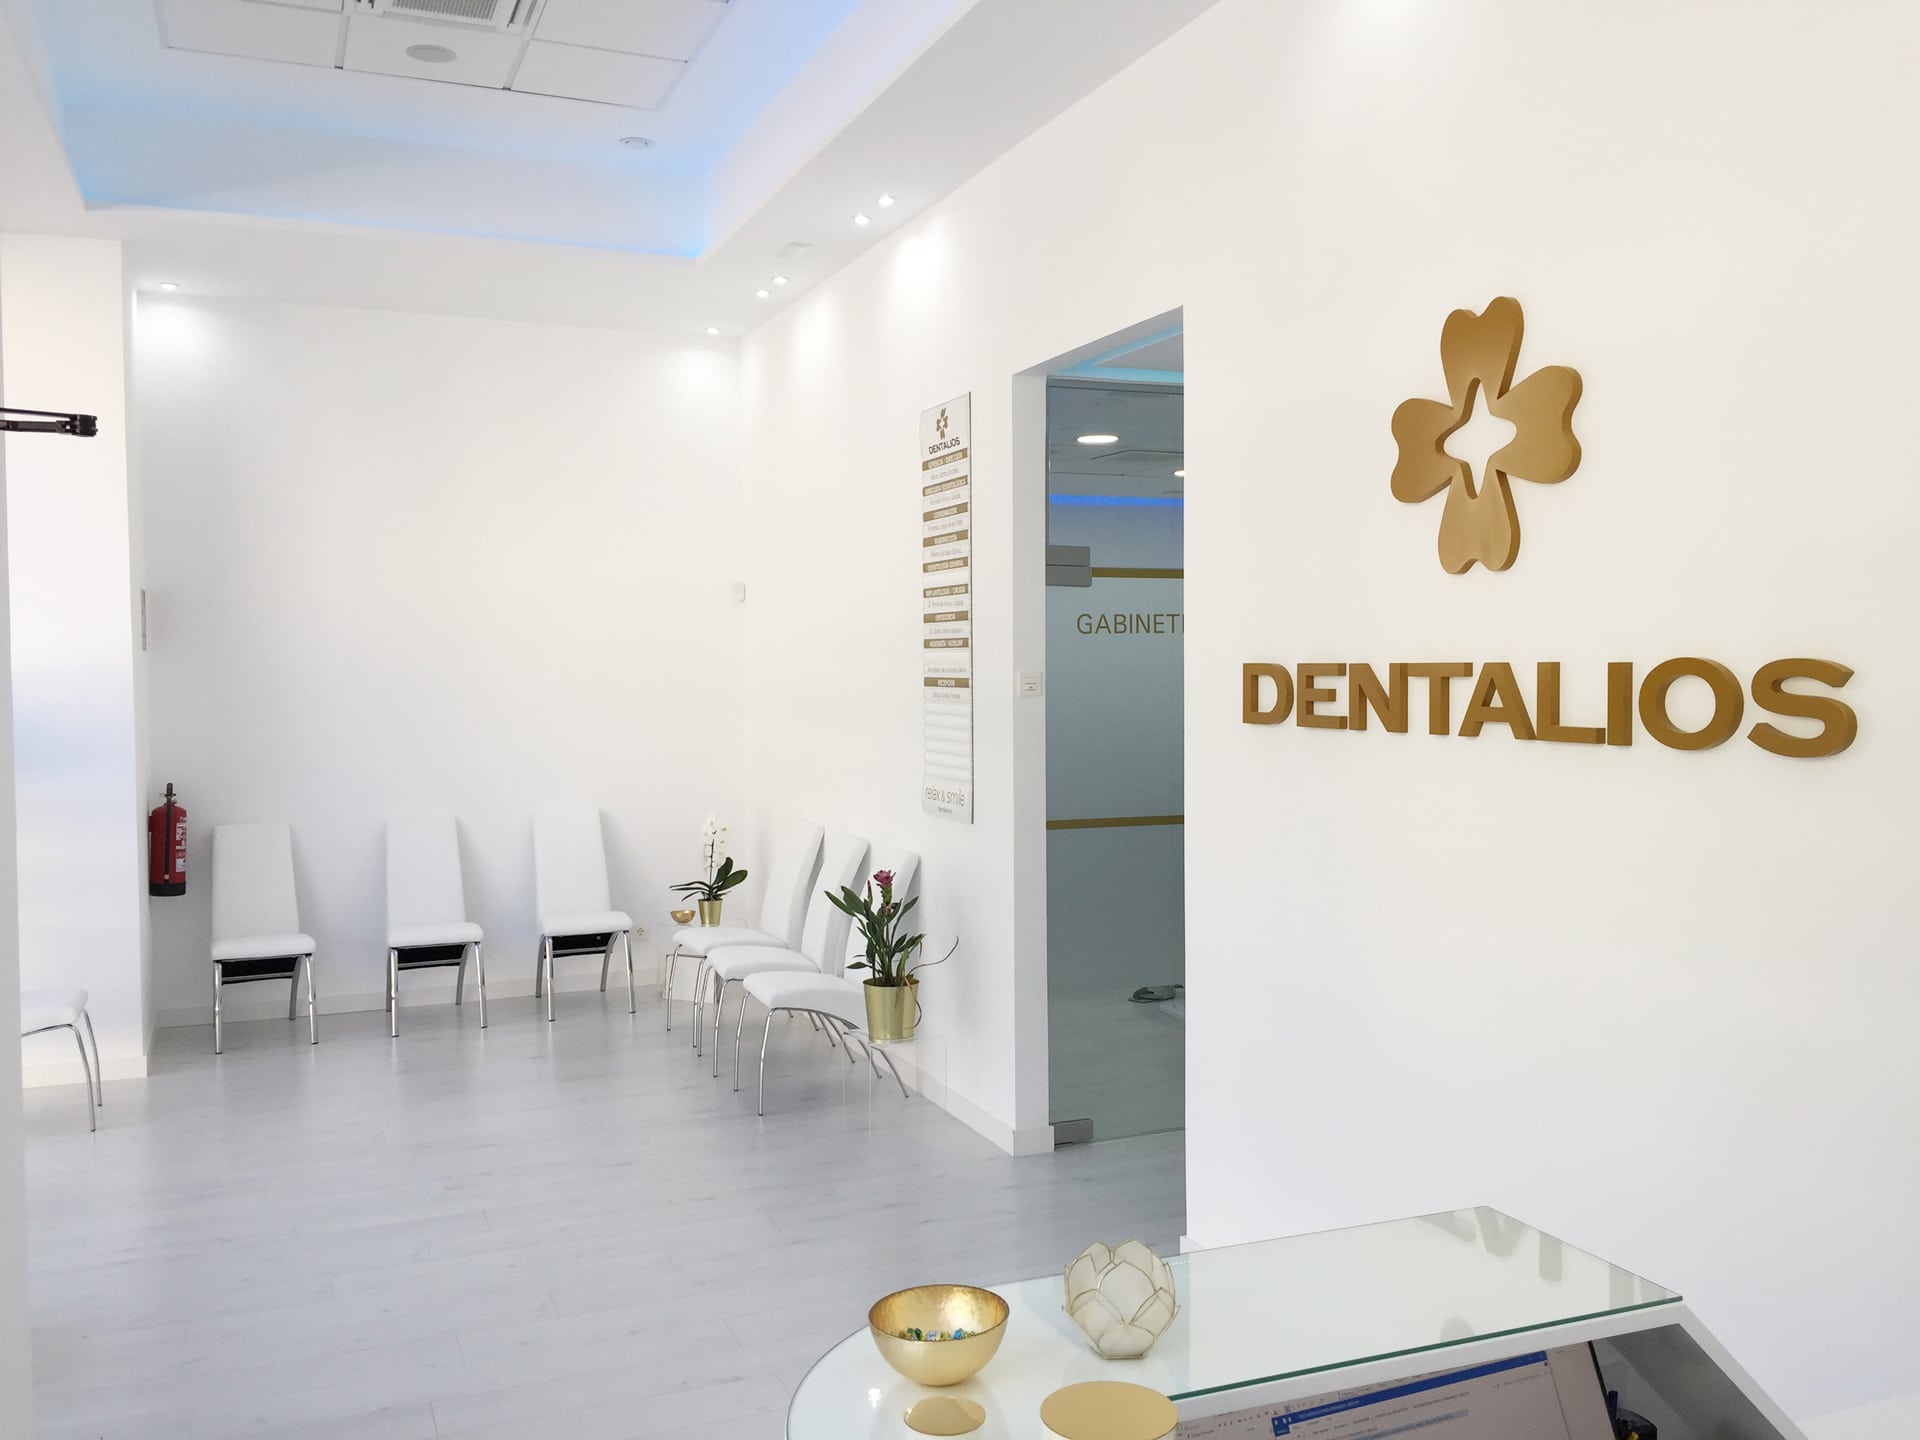 Dentalios: clínica dental ética y empática